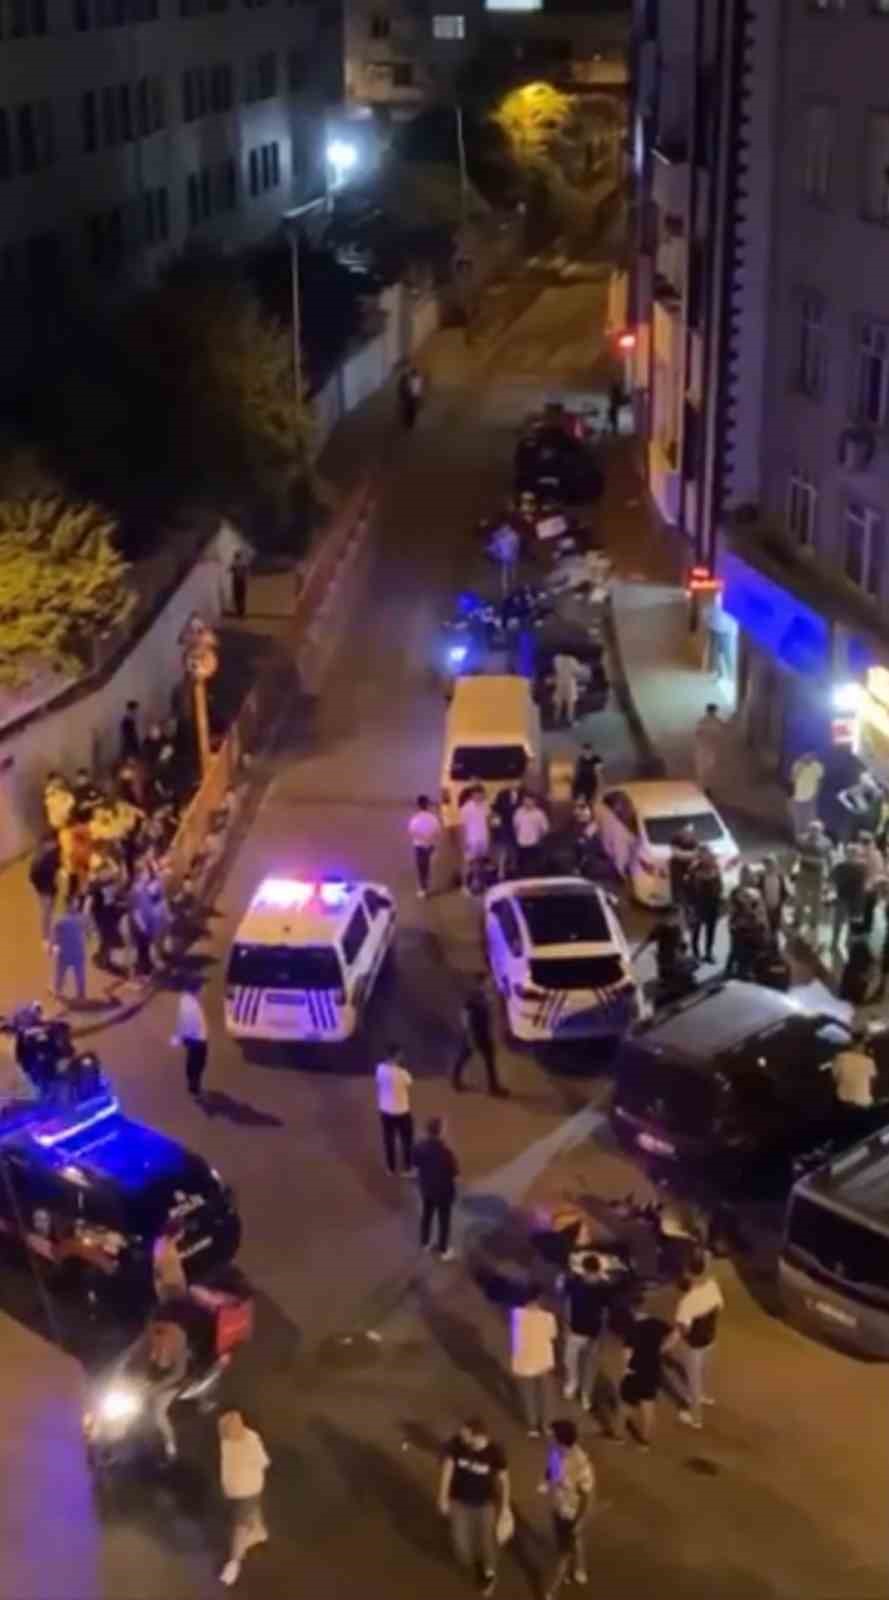 İstanbul’da kıraathane önünde silahlı saldırı kamerada: Cipten ateş açılıp öldürüldü
